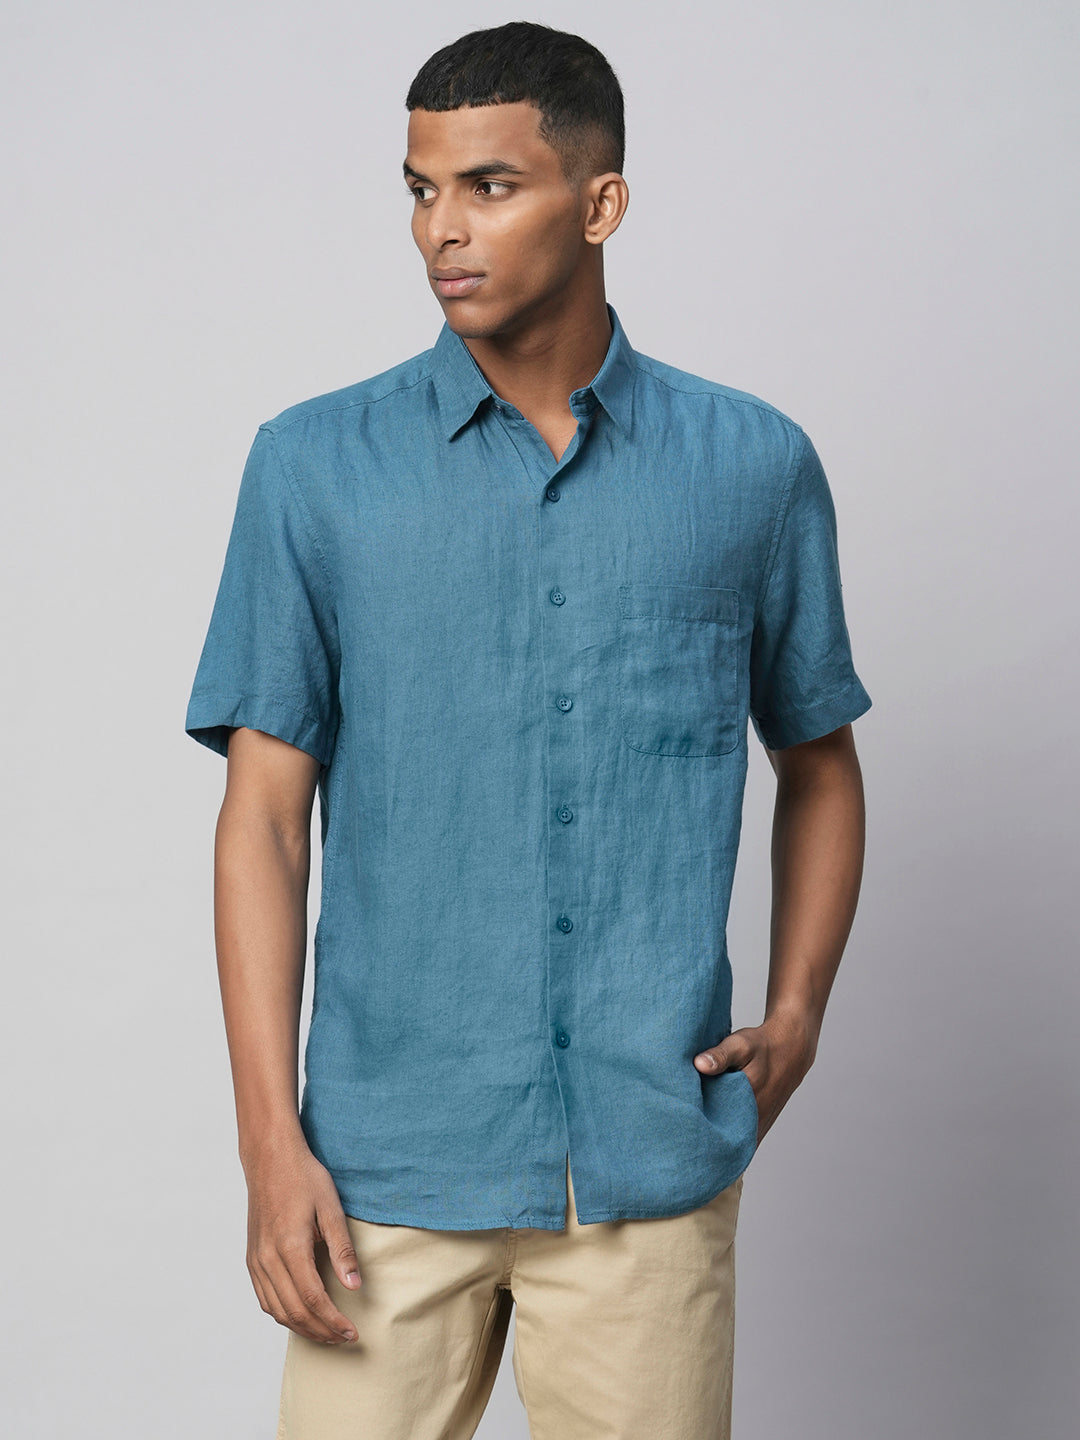 Men's Linen Teal Regular Fit Shirt